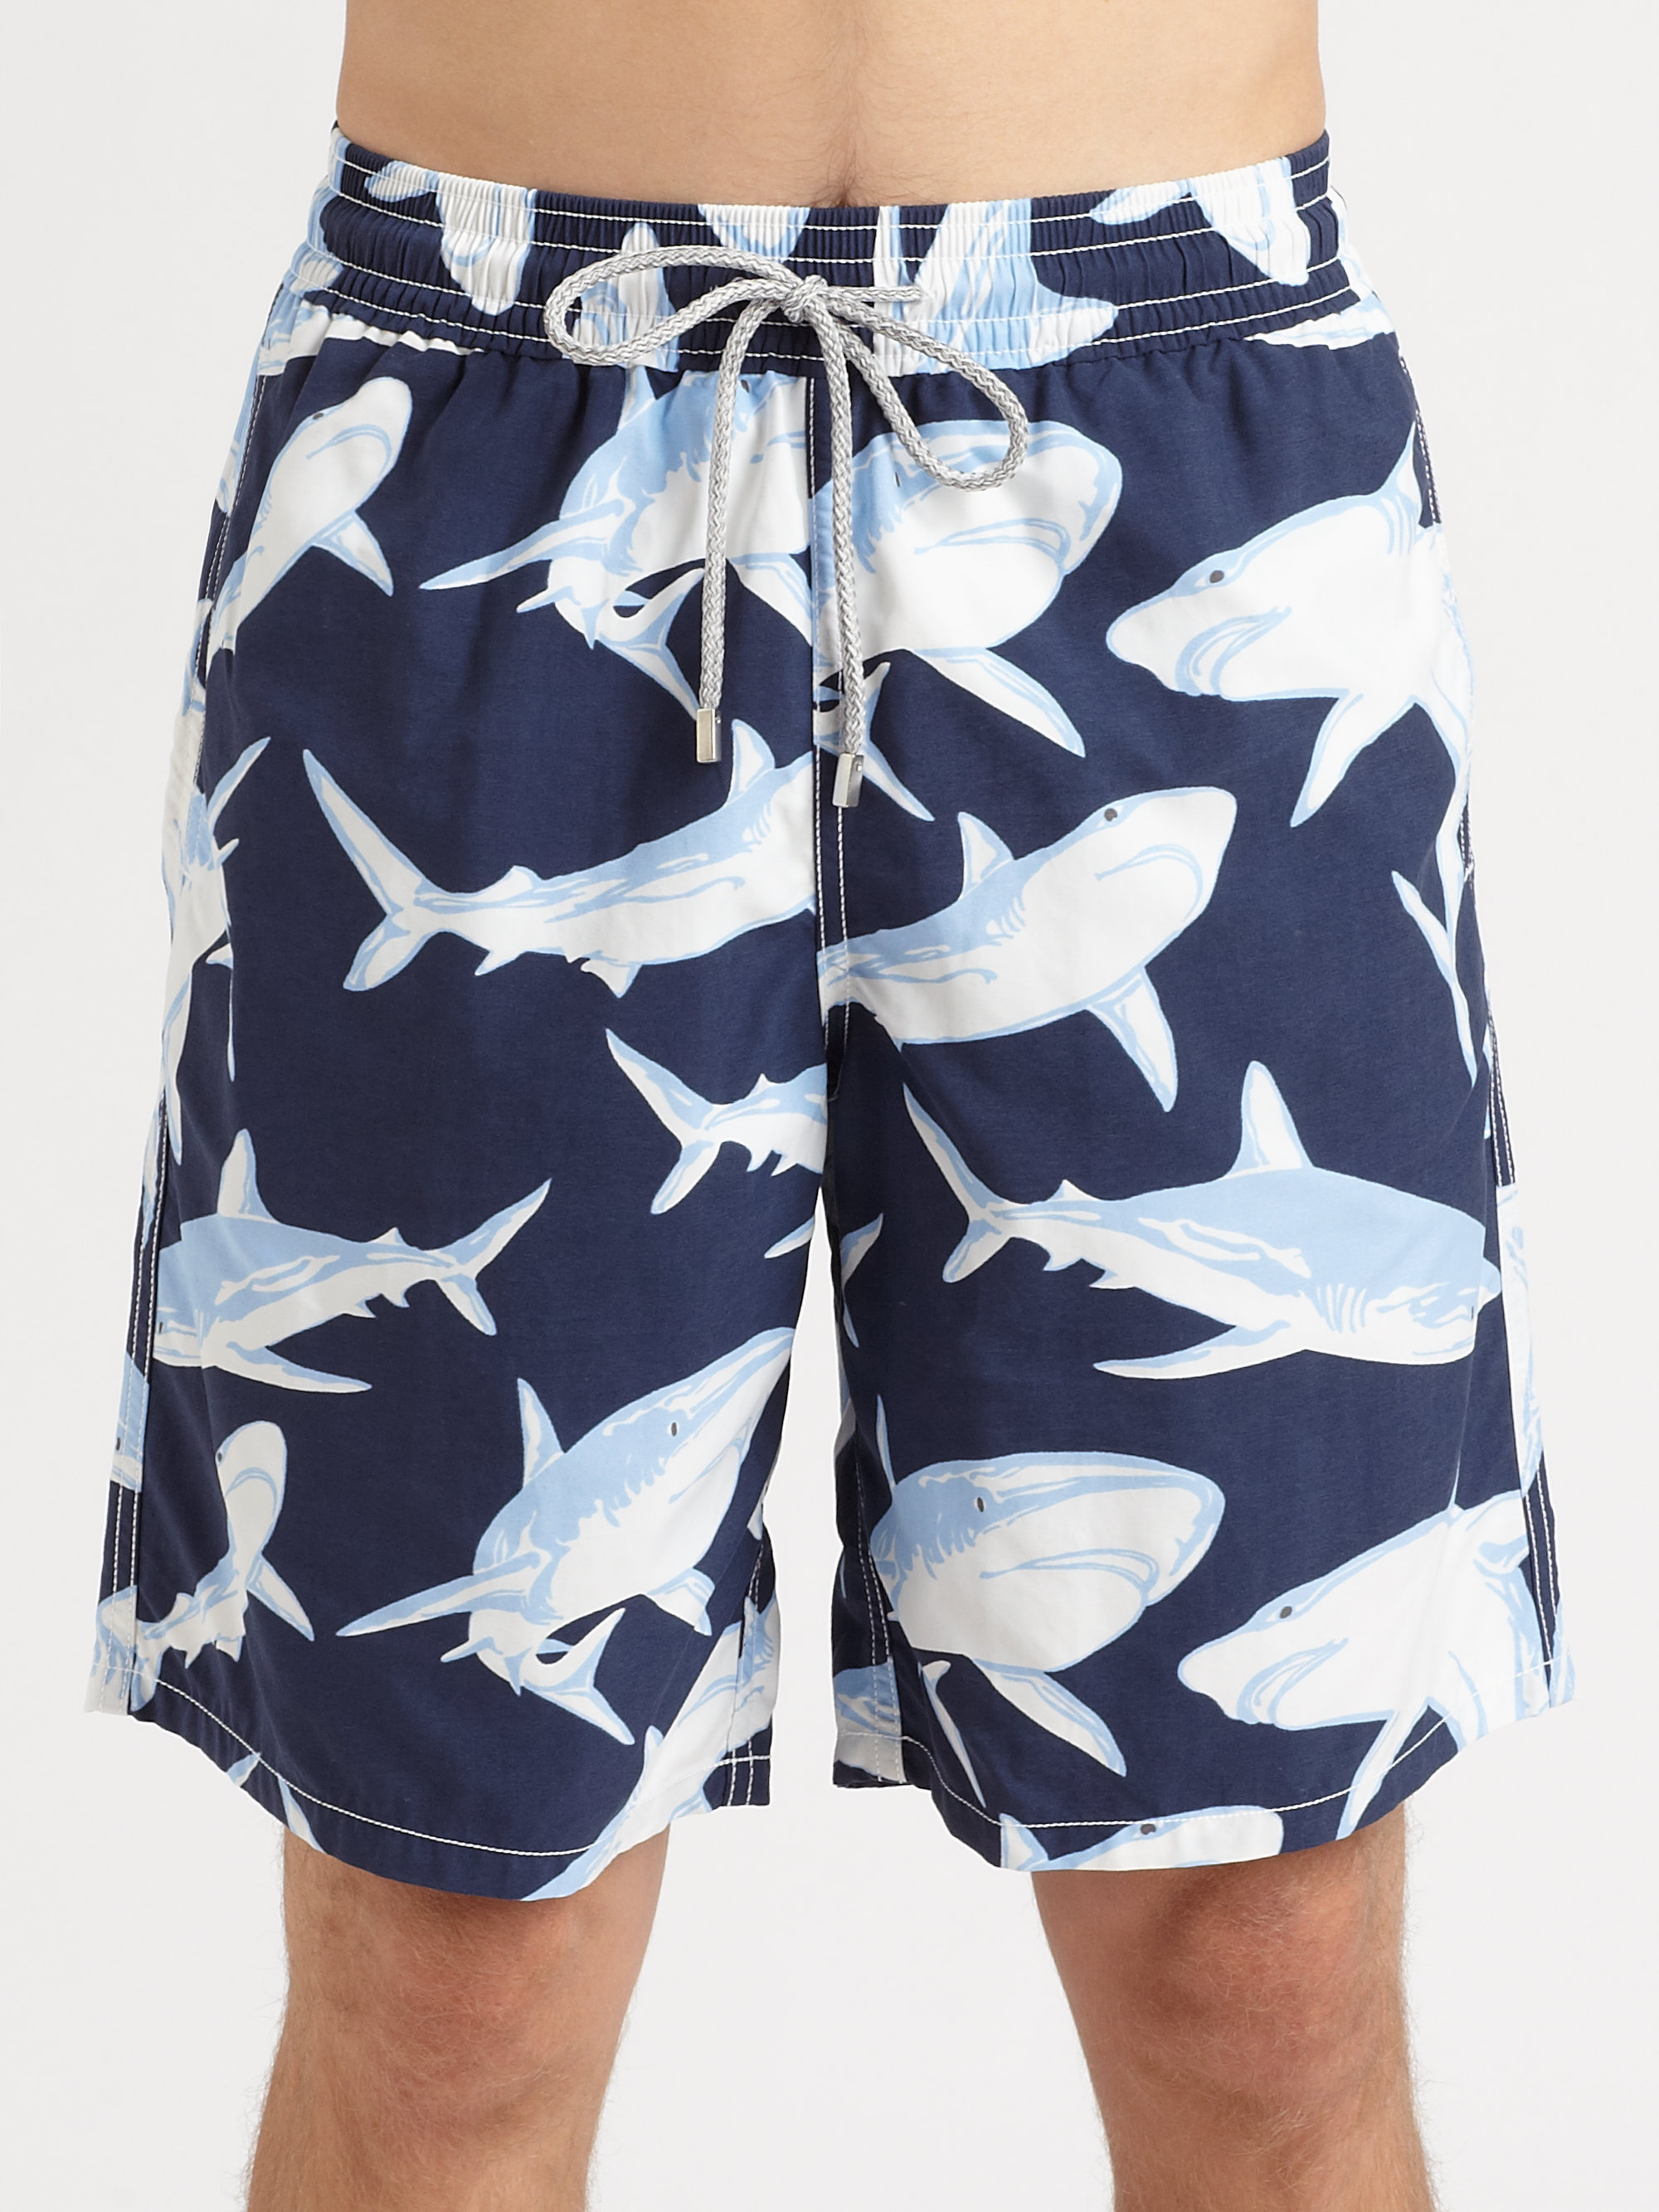 Lyst - Vilebrequin Shark Print Swim Trunks in Blue for Men